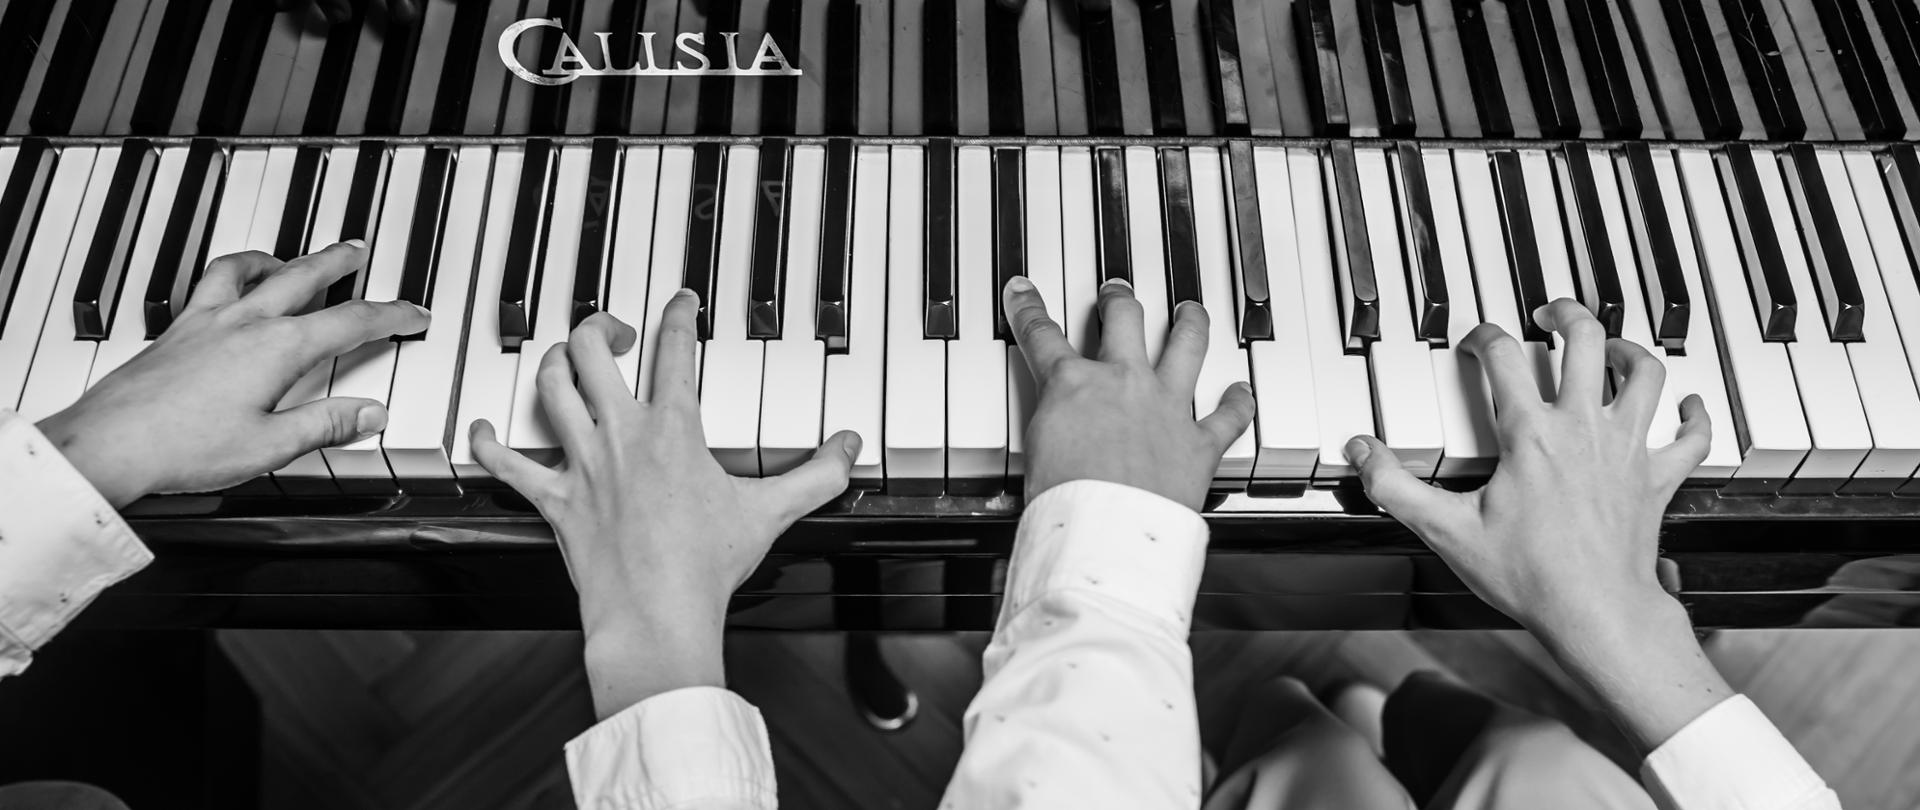 czarno-białe zdjęcie rąk dwóch osób grających na fortepianie, perspektywa z lotu ptaka, dłonie odbijają się w desce fortepianu